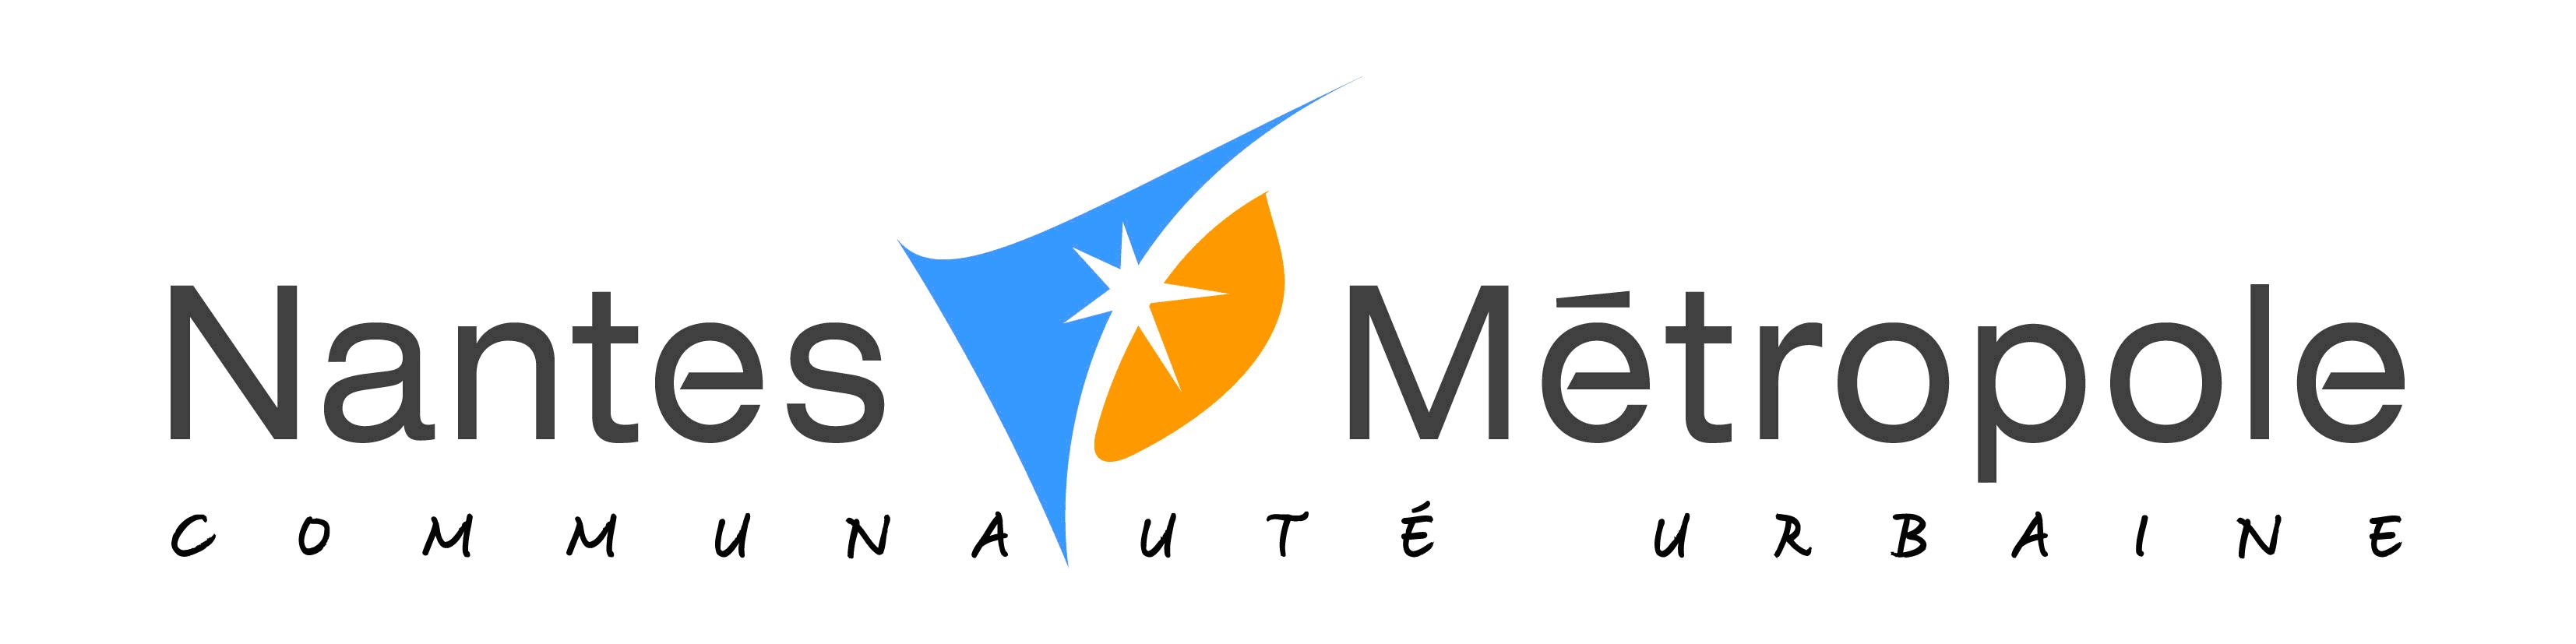 Nantes_metro_logo